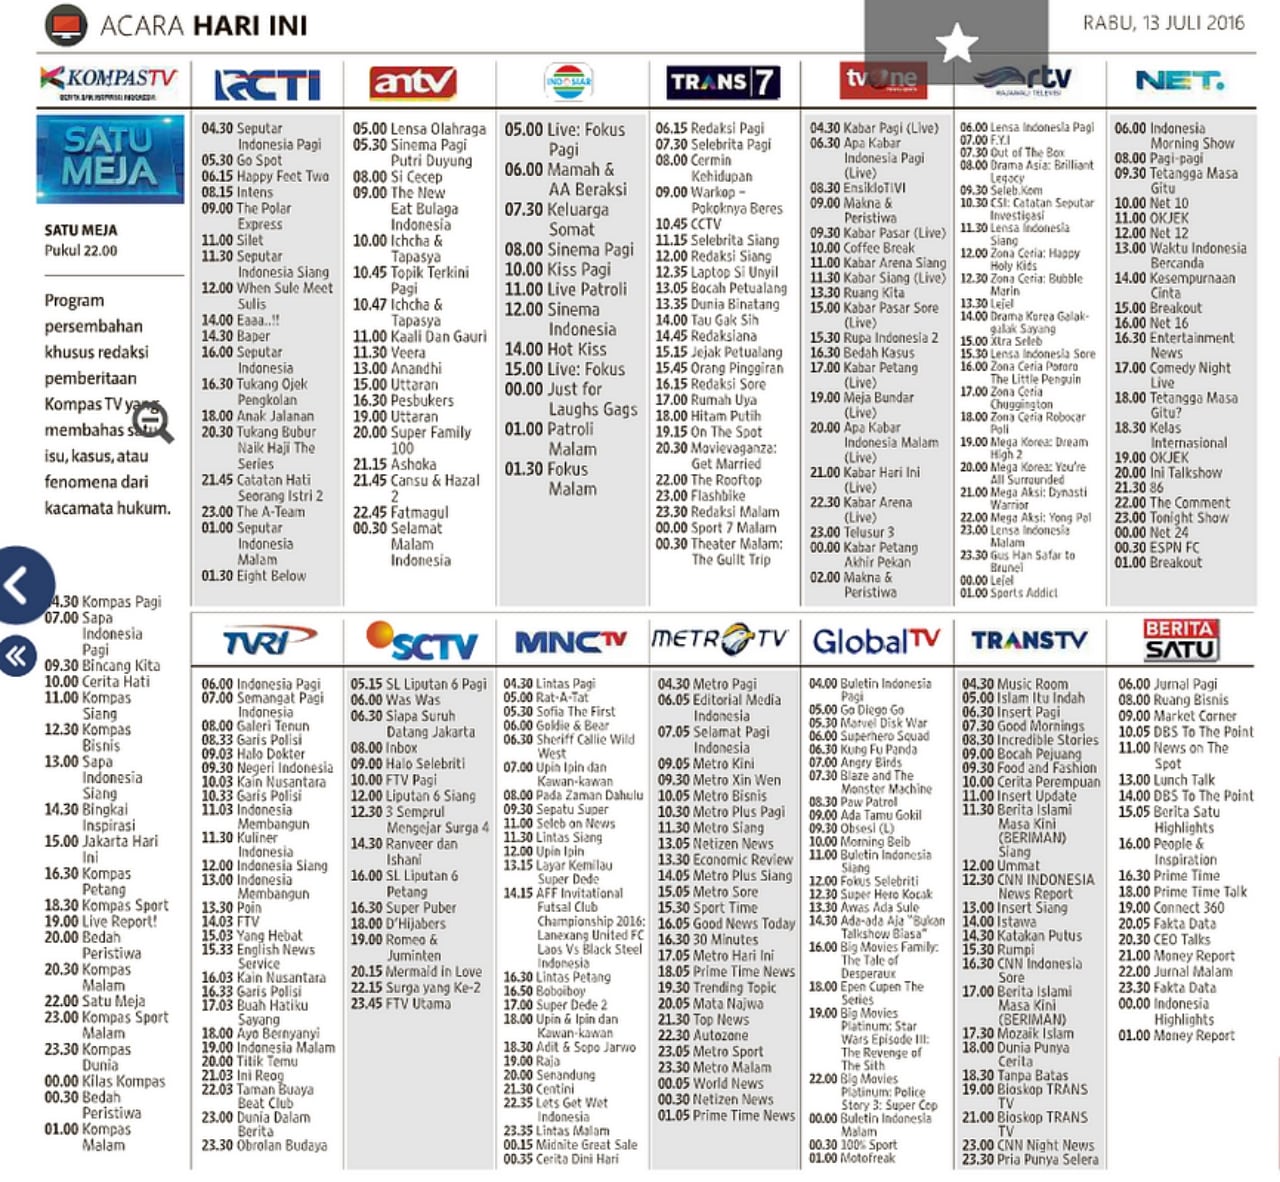 Pada 2016 jadwal acara TV di Kompas untuk 15 stasiun 